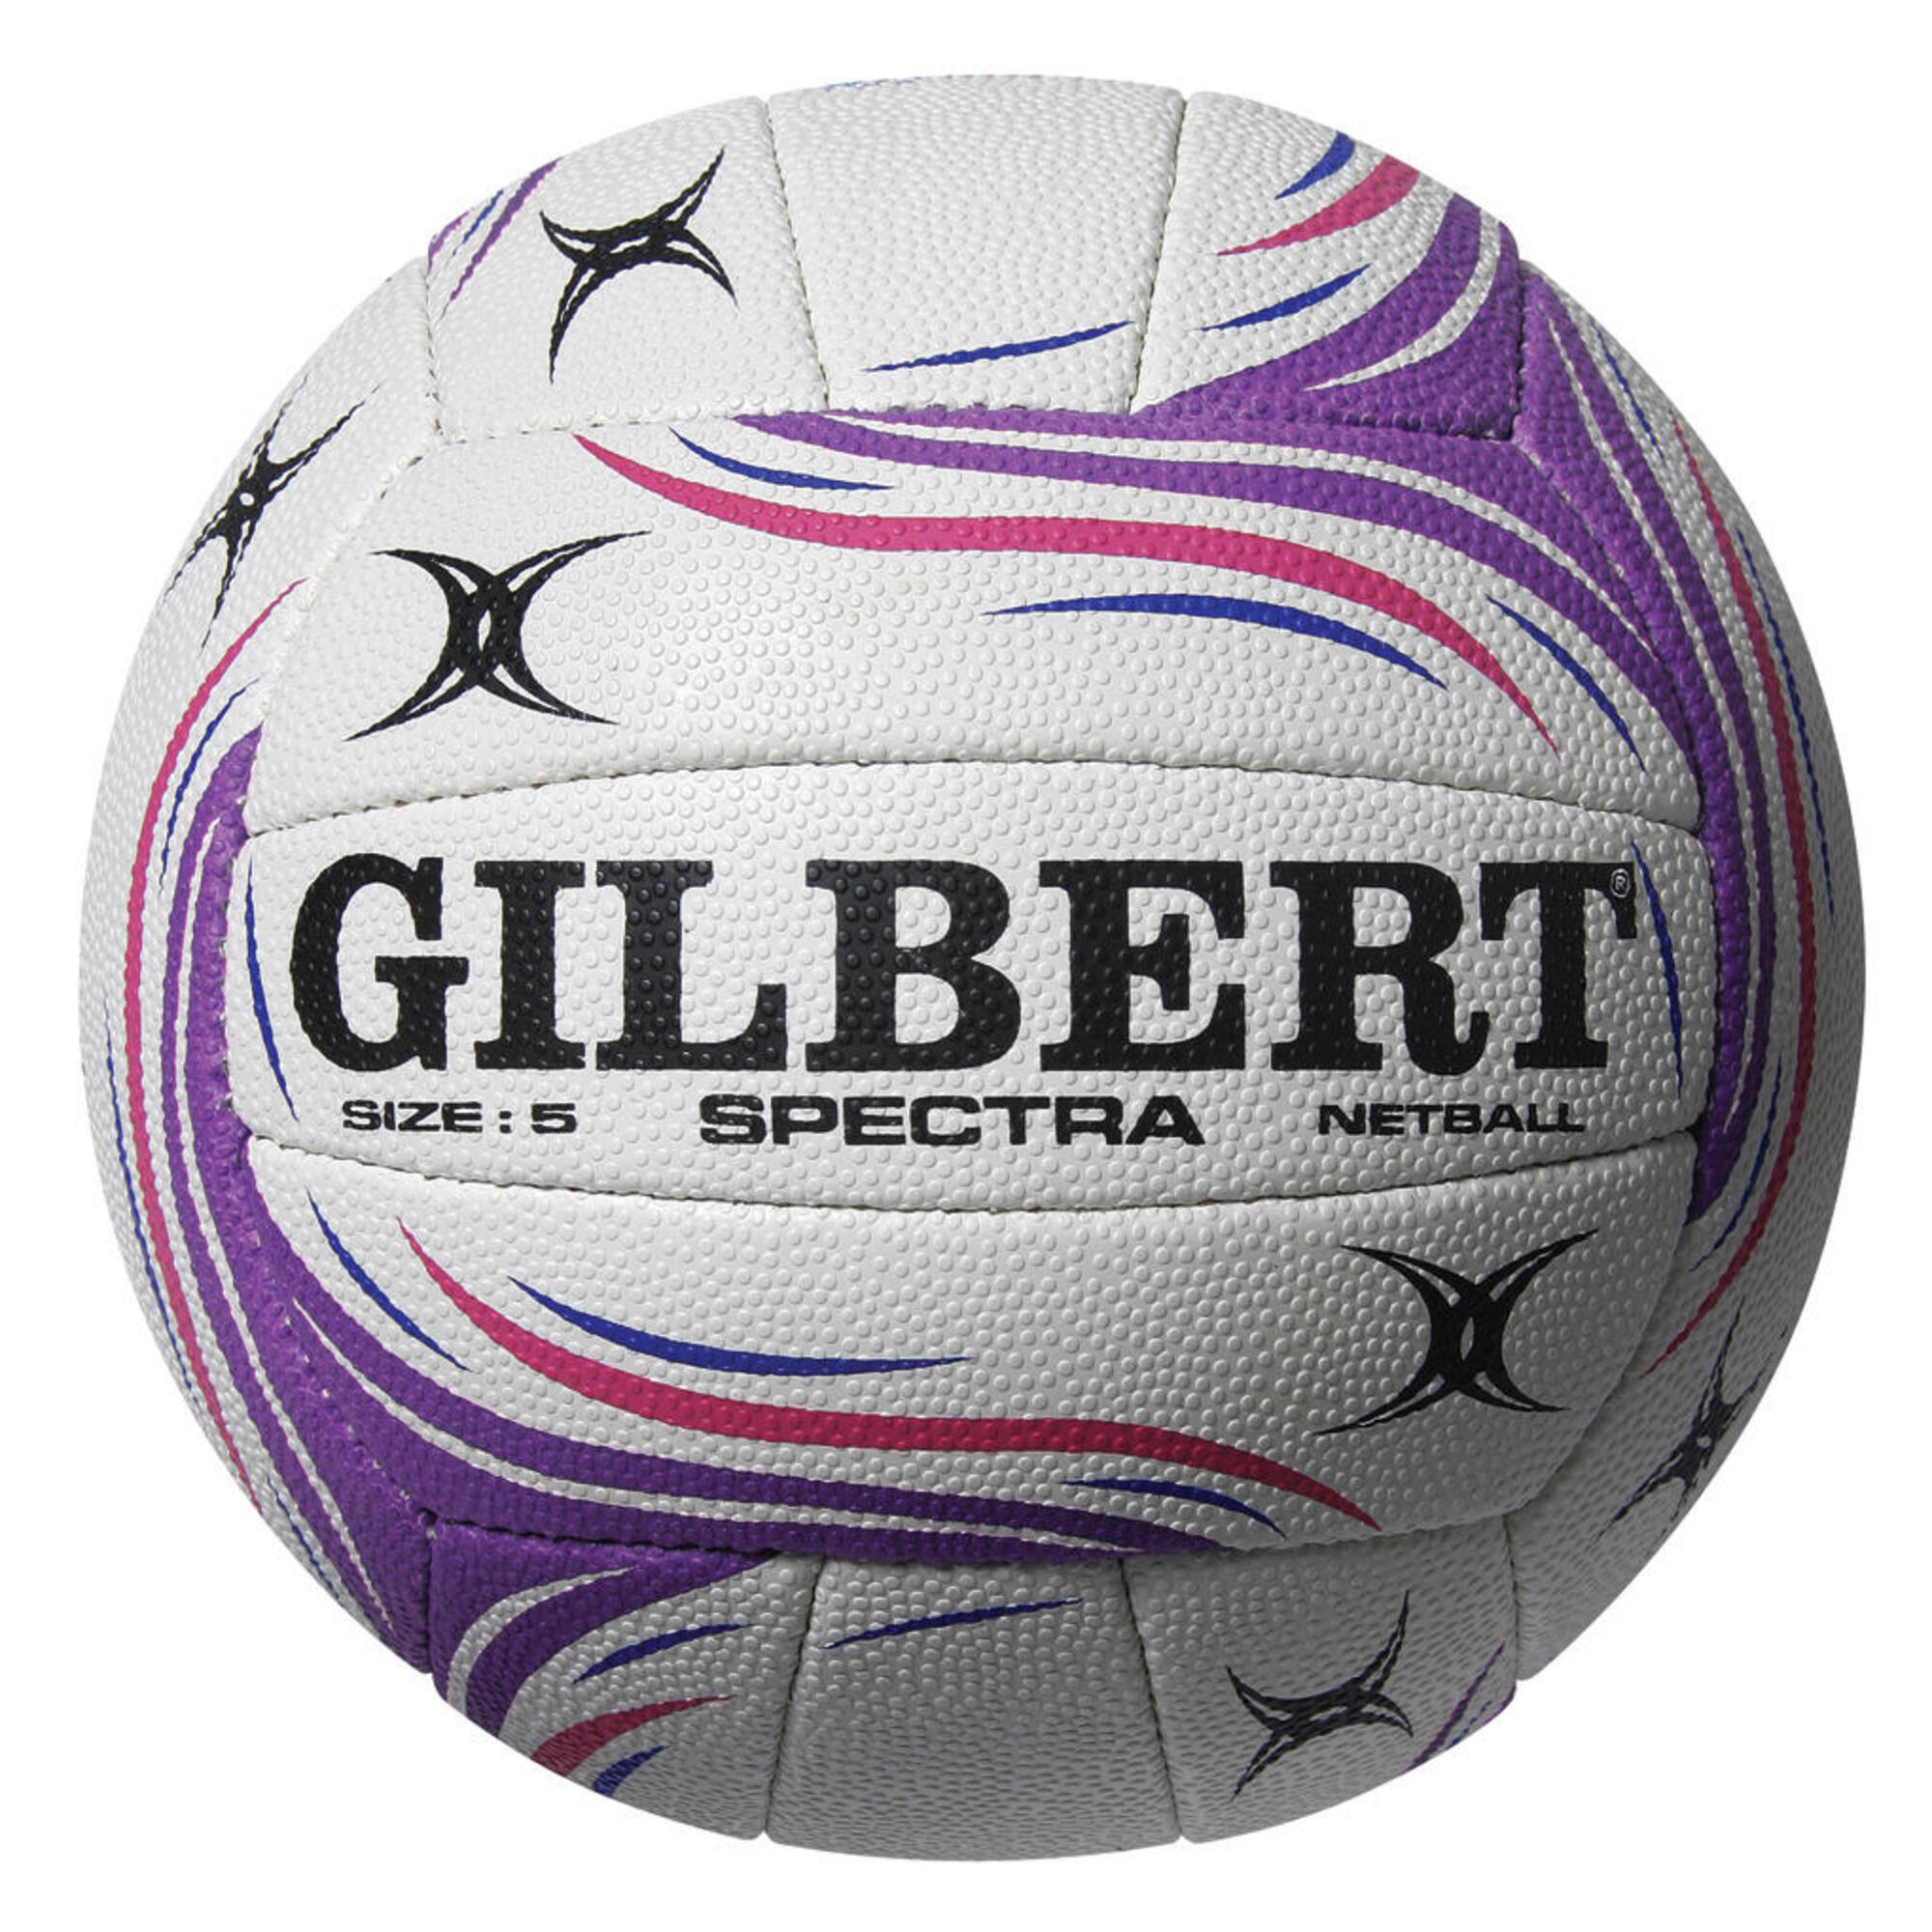 GILBERT Spectra Match Ball, Purple